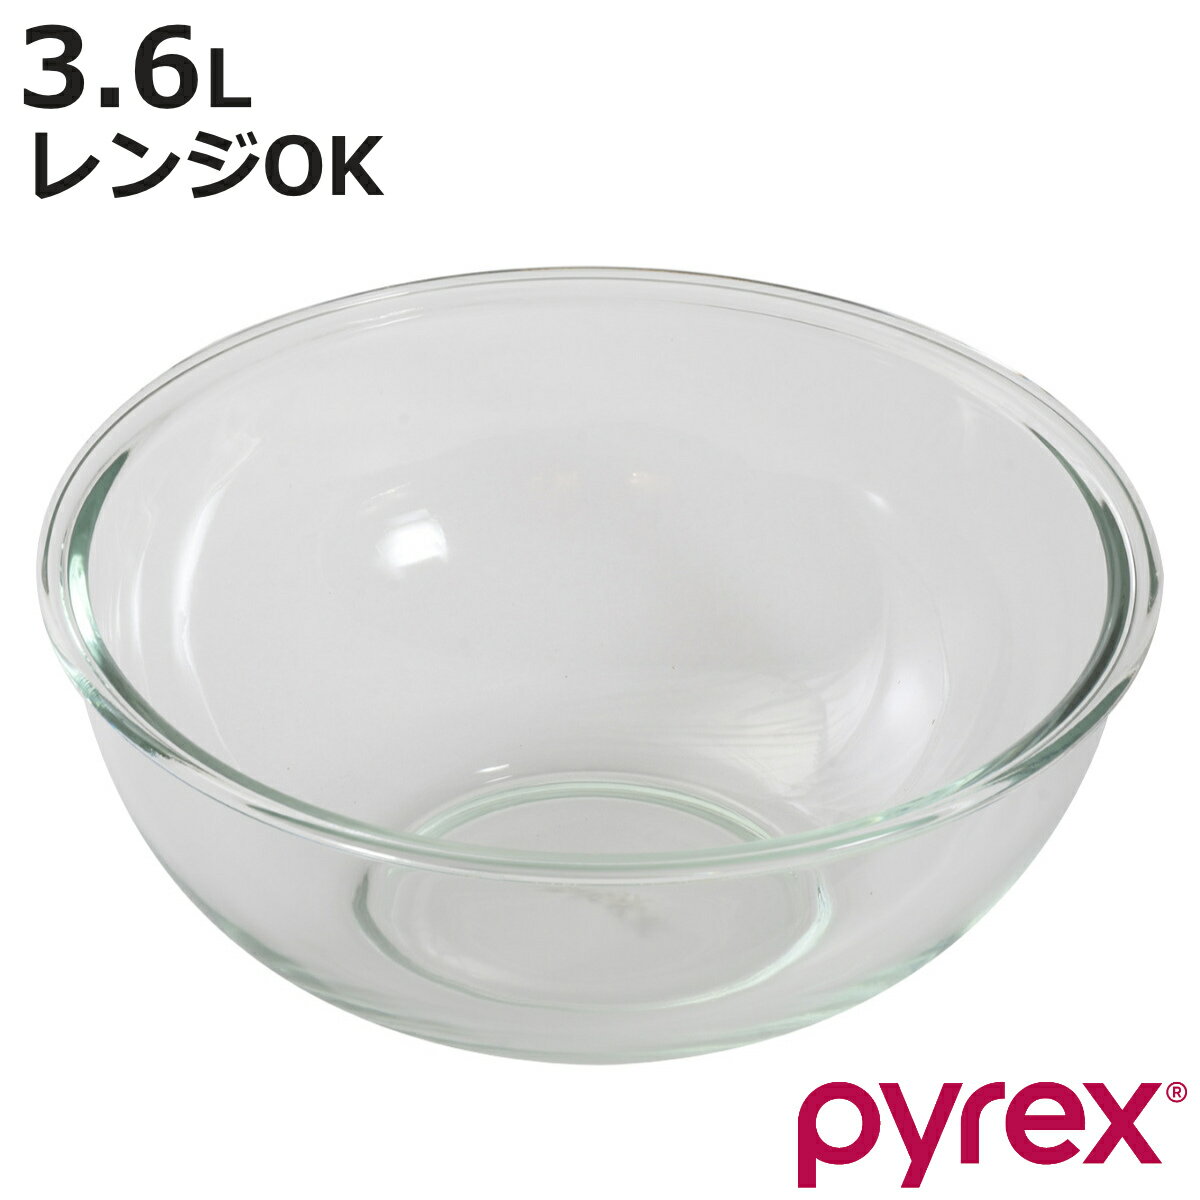 PYREX ボウル 3.6L 耐熱ガラス パイレ